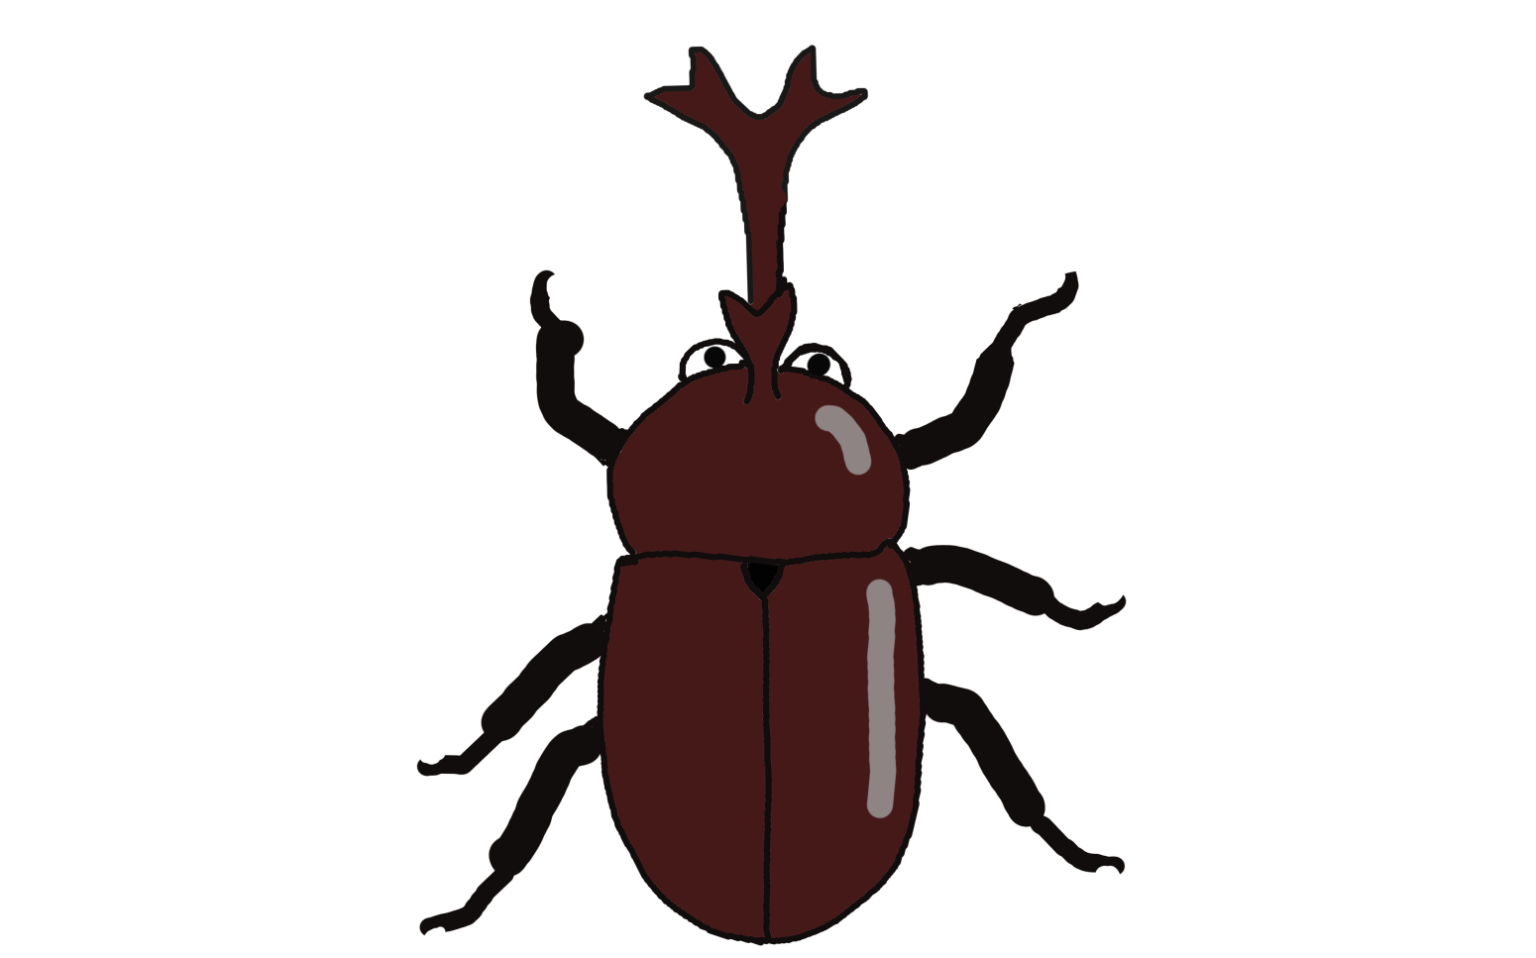 beetle